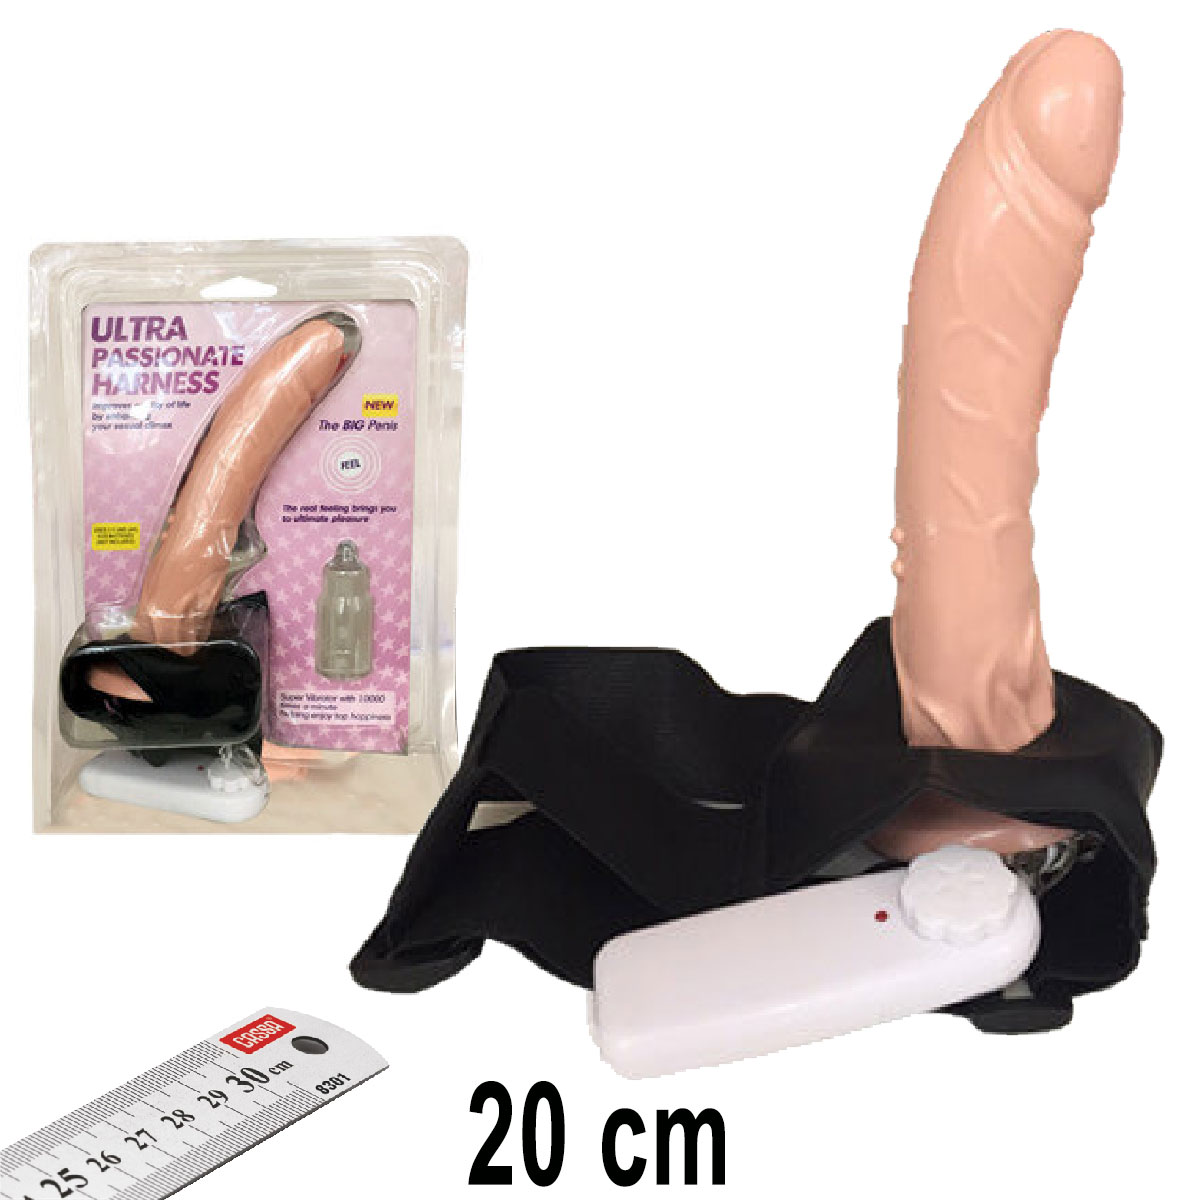 Ultra Passionate Harness i Bo 20 cm Boy 4 cm ap Titreimli Kemerli Realistik Protez Penis AL-1204